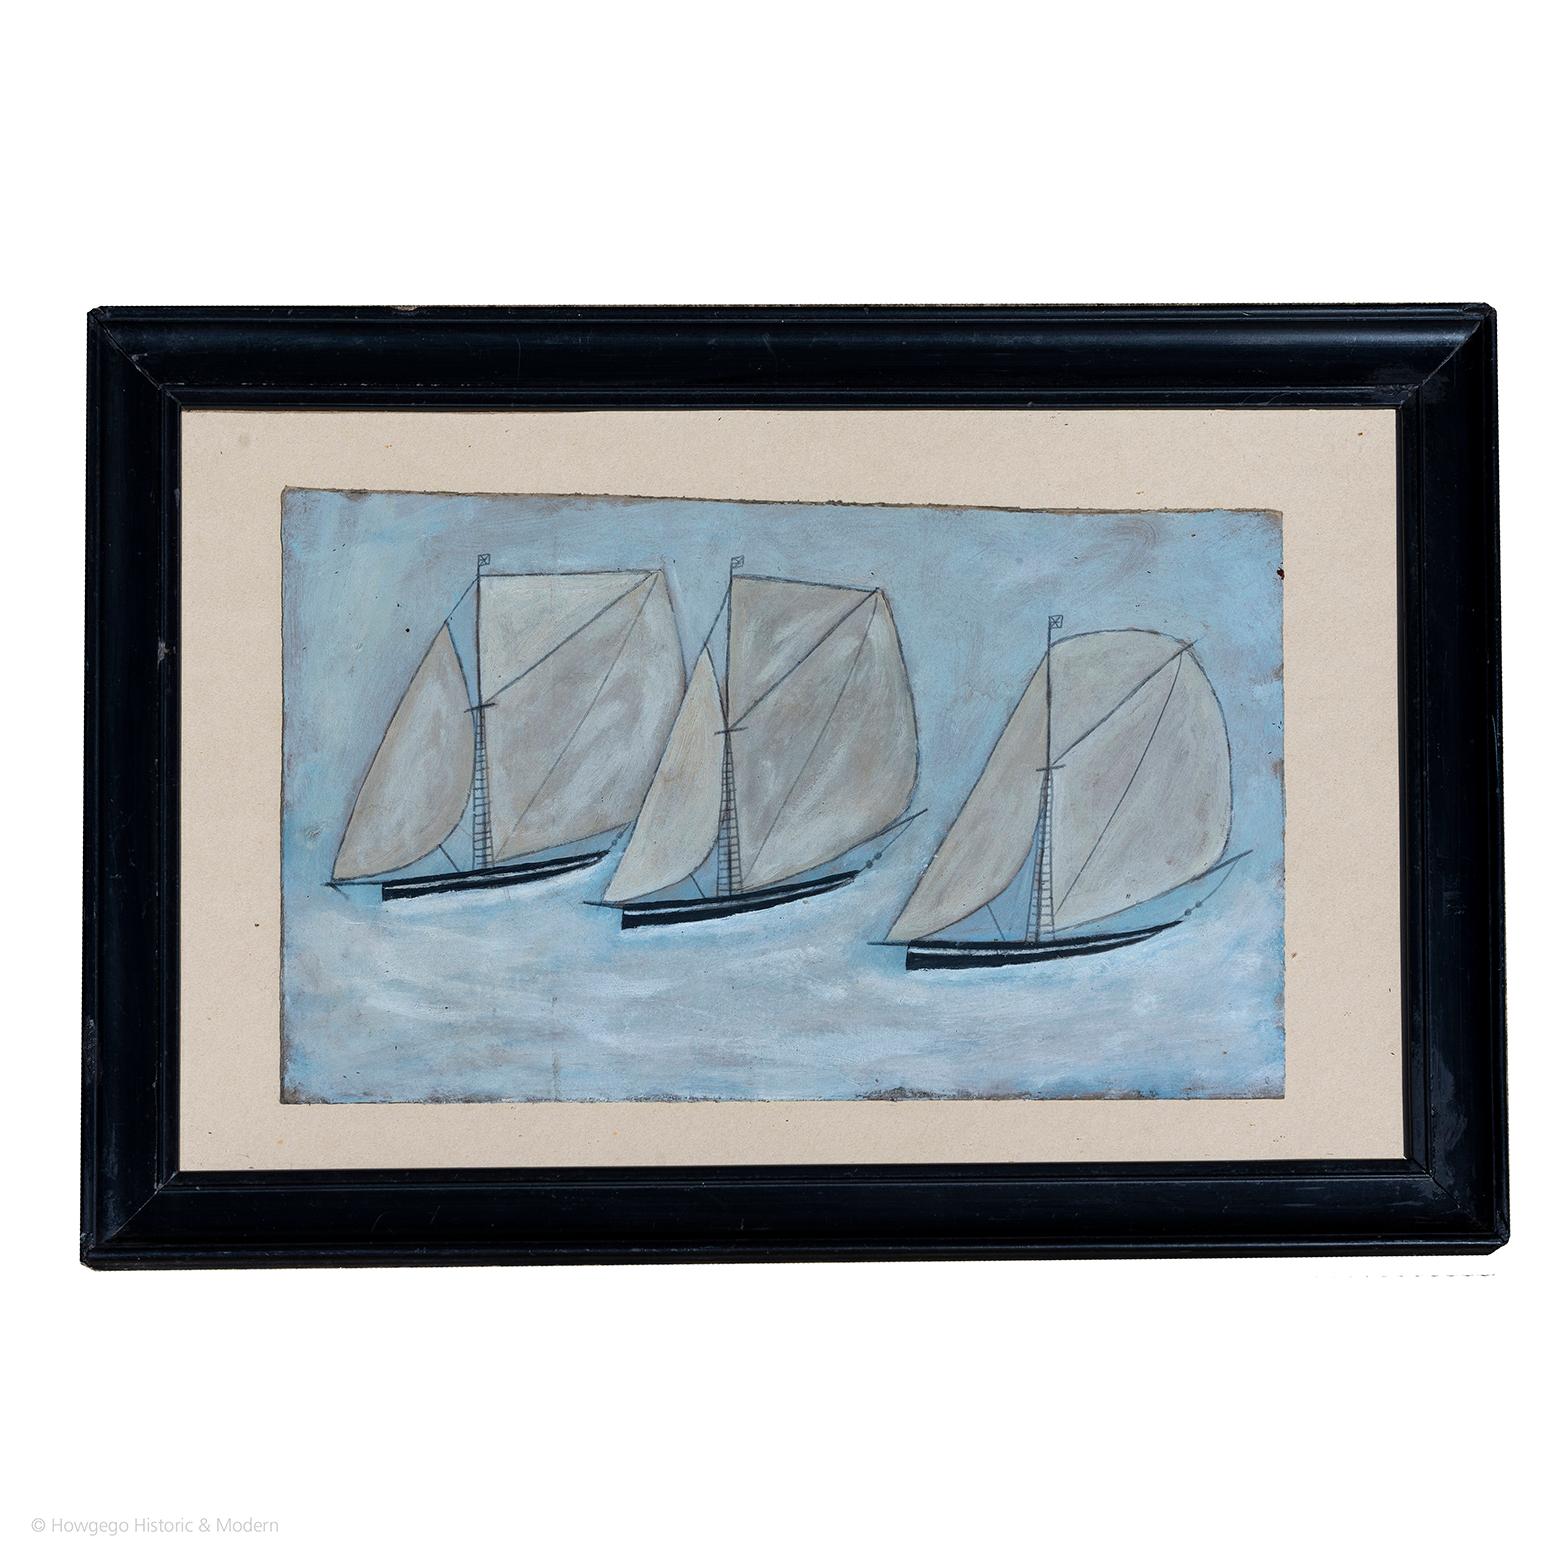 Trois sloops à pleine voile 
Huile sur carton
Tableau naïf de caractère dans l'esprit d'Alfred Wallis

Planche Longueur 41cm., 16